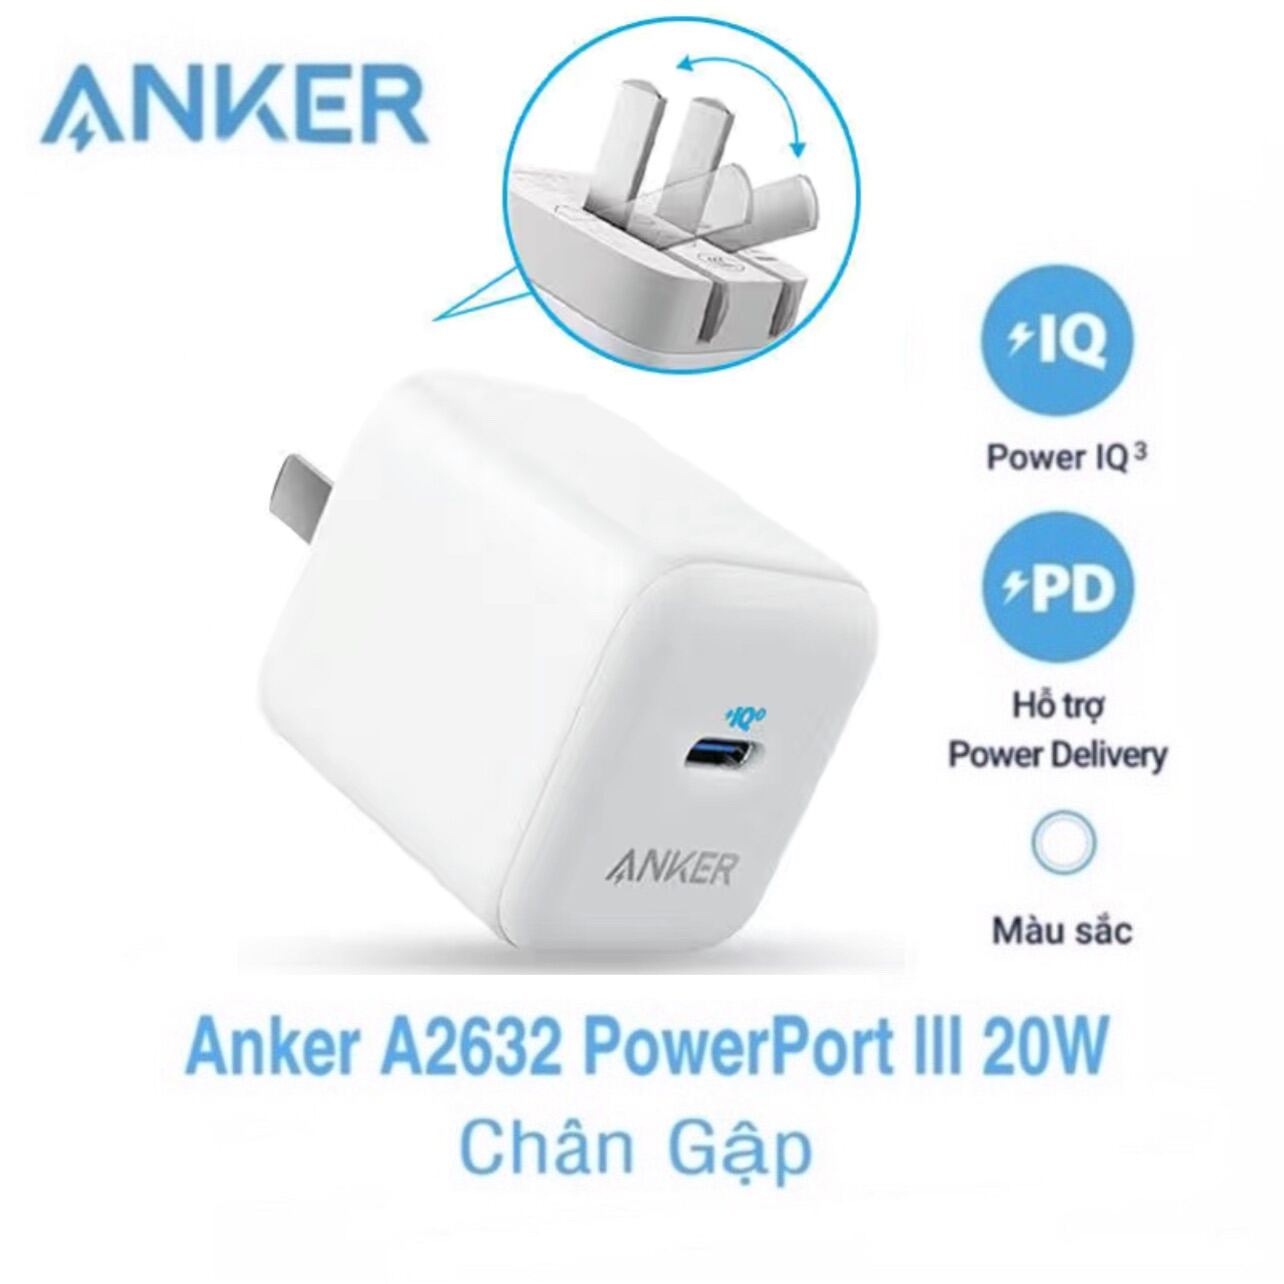 Củ Sạc Anker PowerPort III 20W Power IQ 3.0 Chân Gập Anker A2632 20W